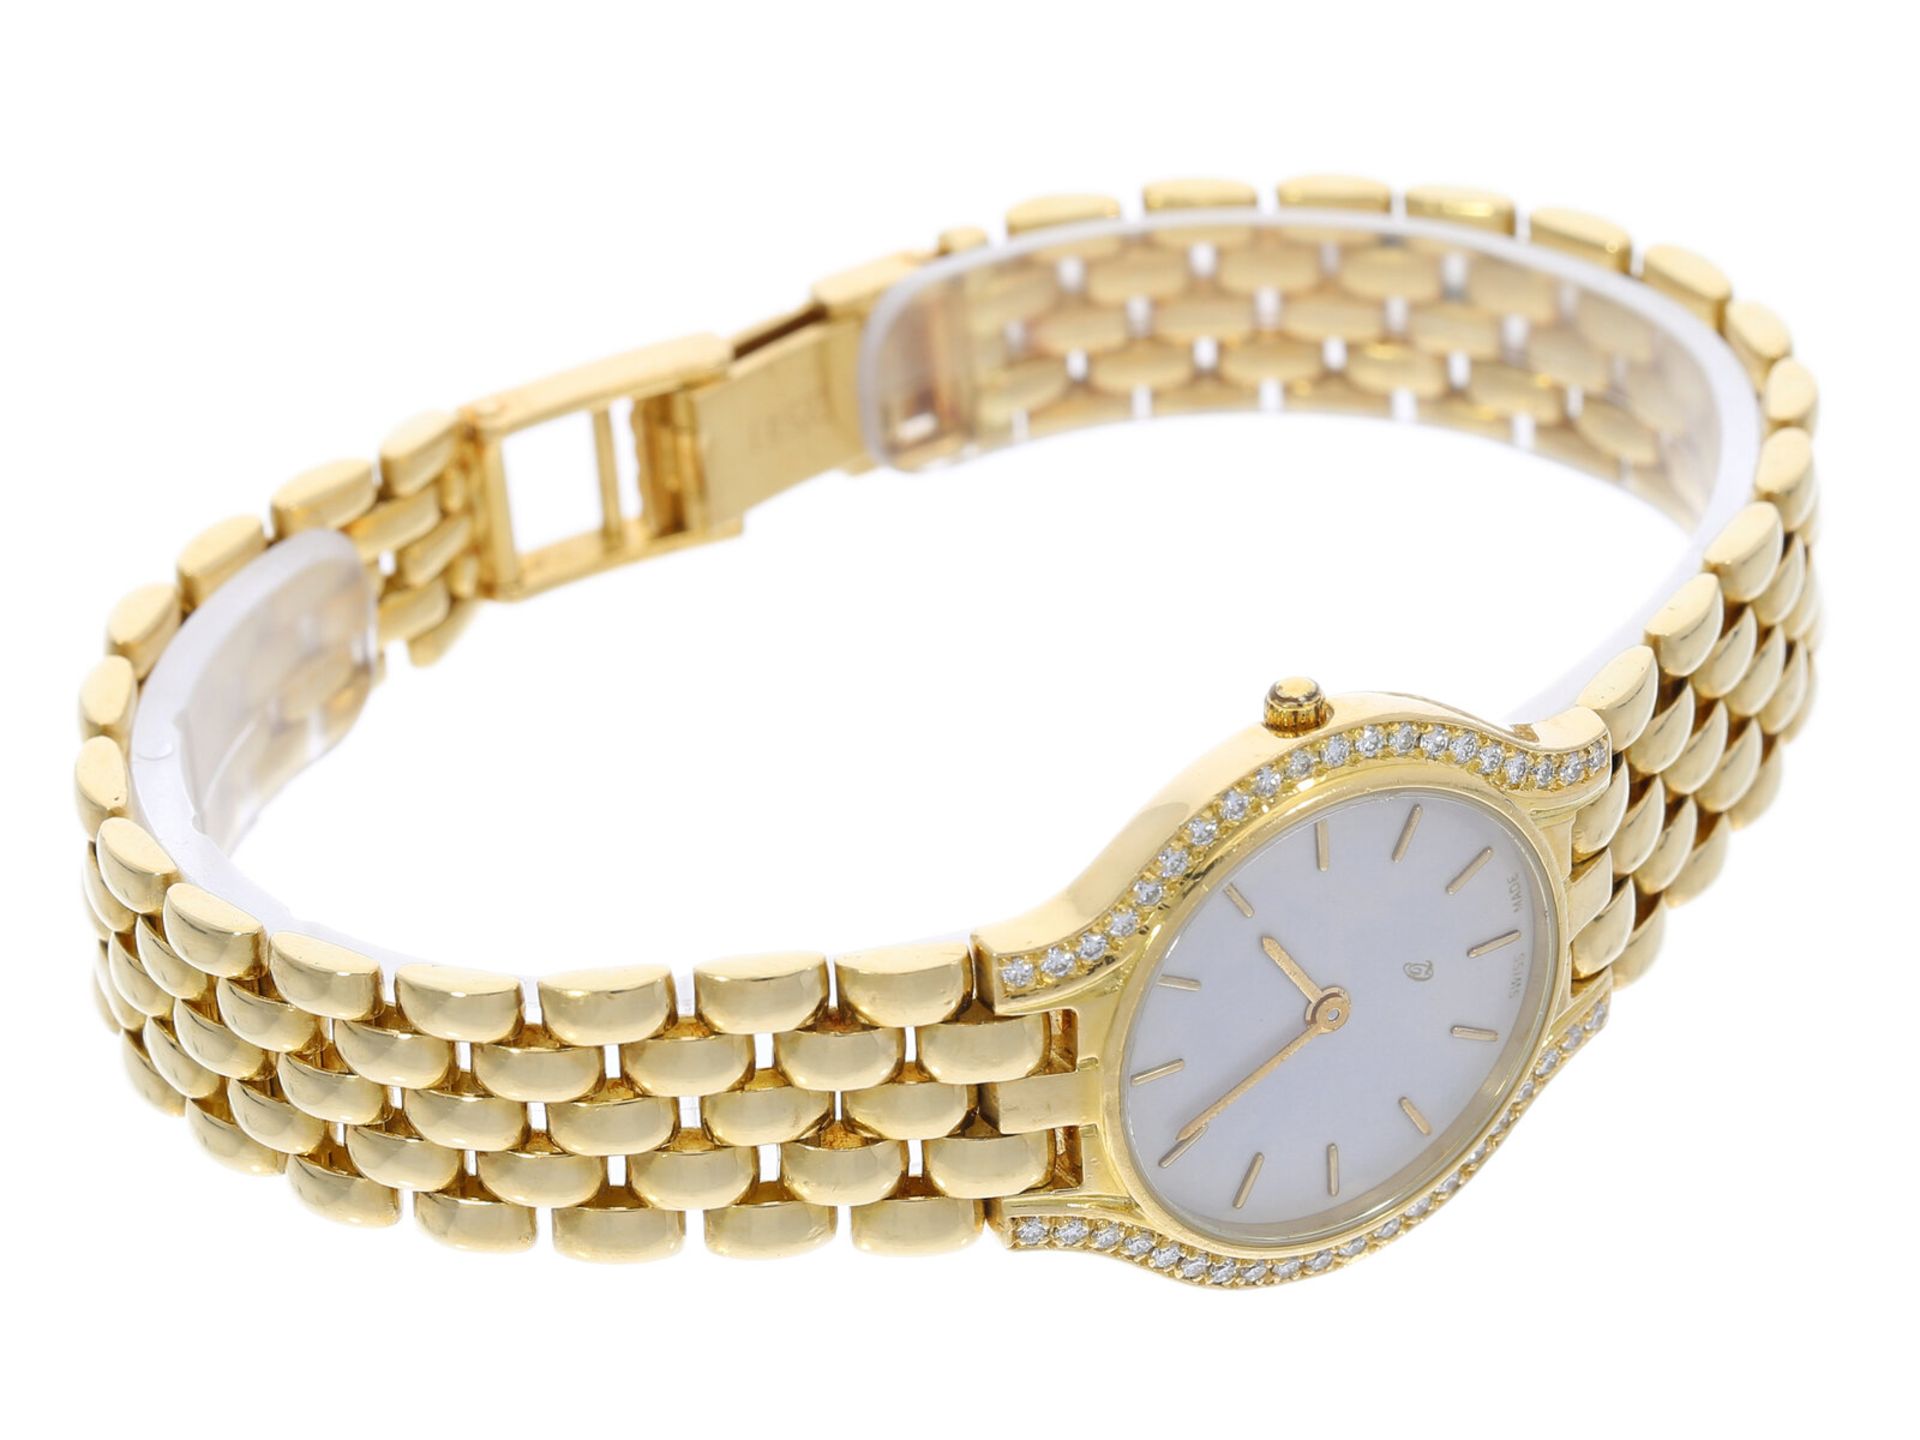 Armbanduhr: Goldene vintage Damenuhr mit Brillantbesatz, 18K Gelbgold - Bild 2 aus 4